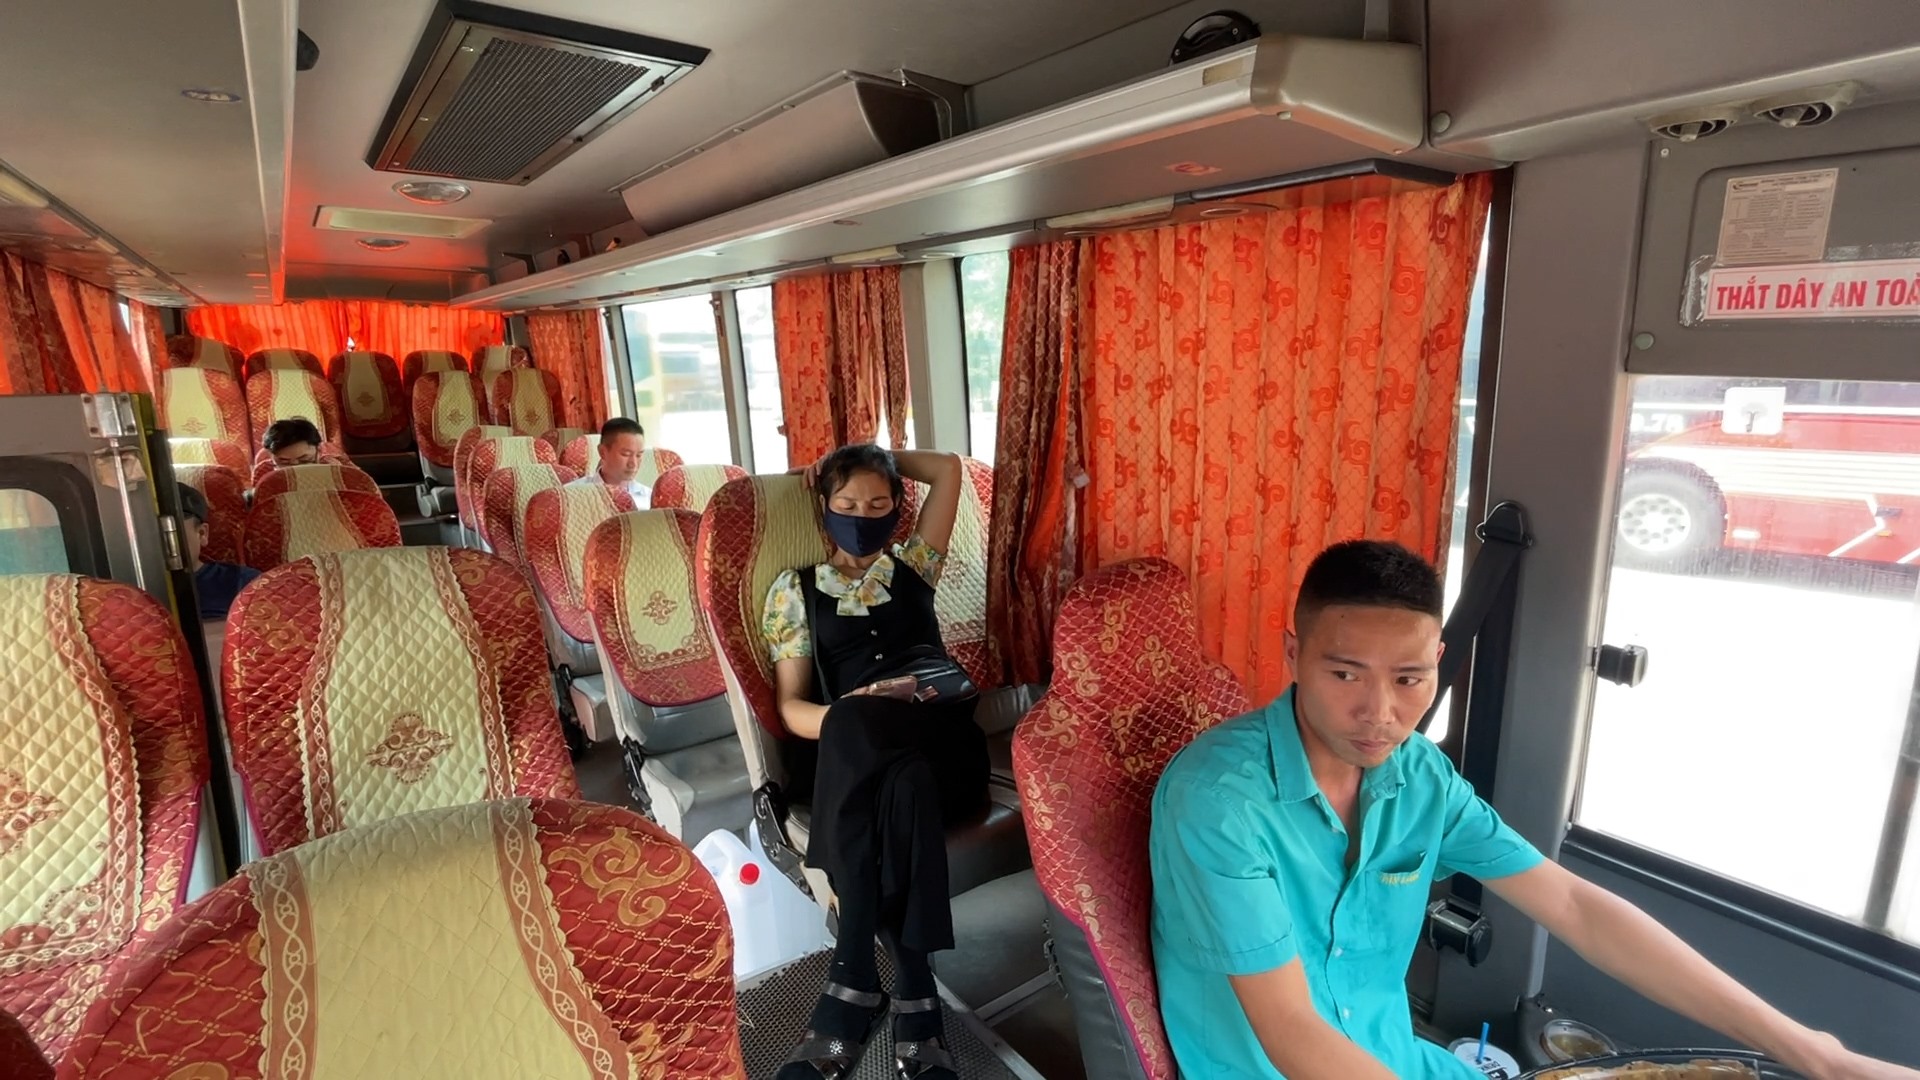 Anh Nguyễn Văn Oanh, lái xe khách Bắc Giang - Hà Nội cho biết, theo kinh nghiệm hôm nay đã chuẩn bị sẵn sàng để đón lượng khách lớn. Tuy nhiên, khác với mọi năm, ngày cuối cùng của kỳ nghỉ lễ 30.4 - 1.5 năm nay khách khá thưa thớt, lái xe cũng bất ngờ vì số lượng khách không đạt như kỳ vọng.